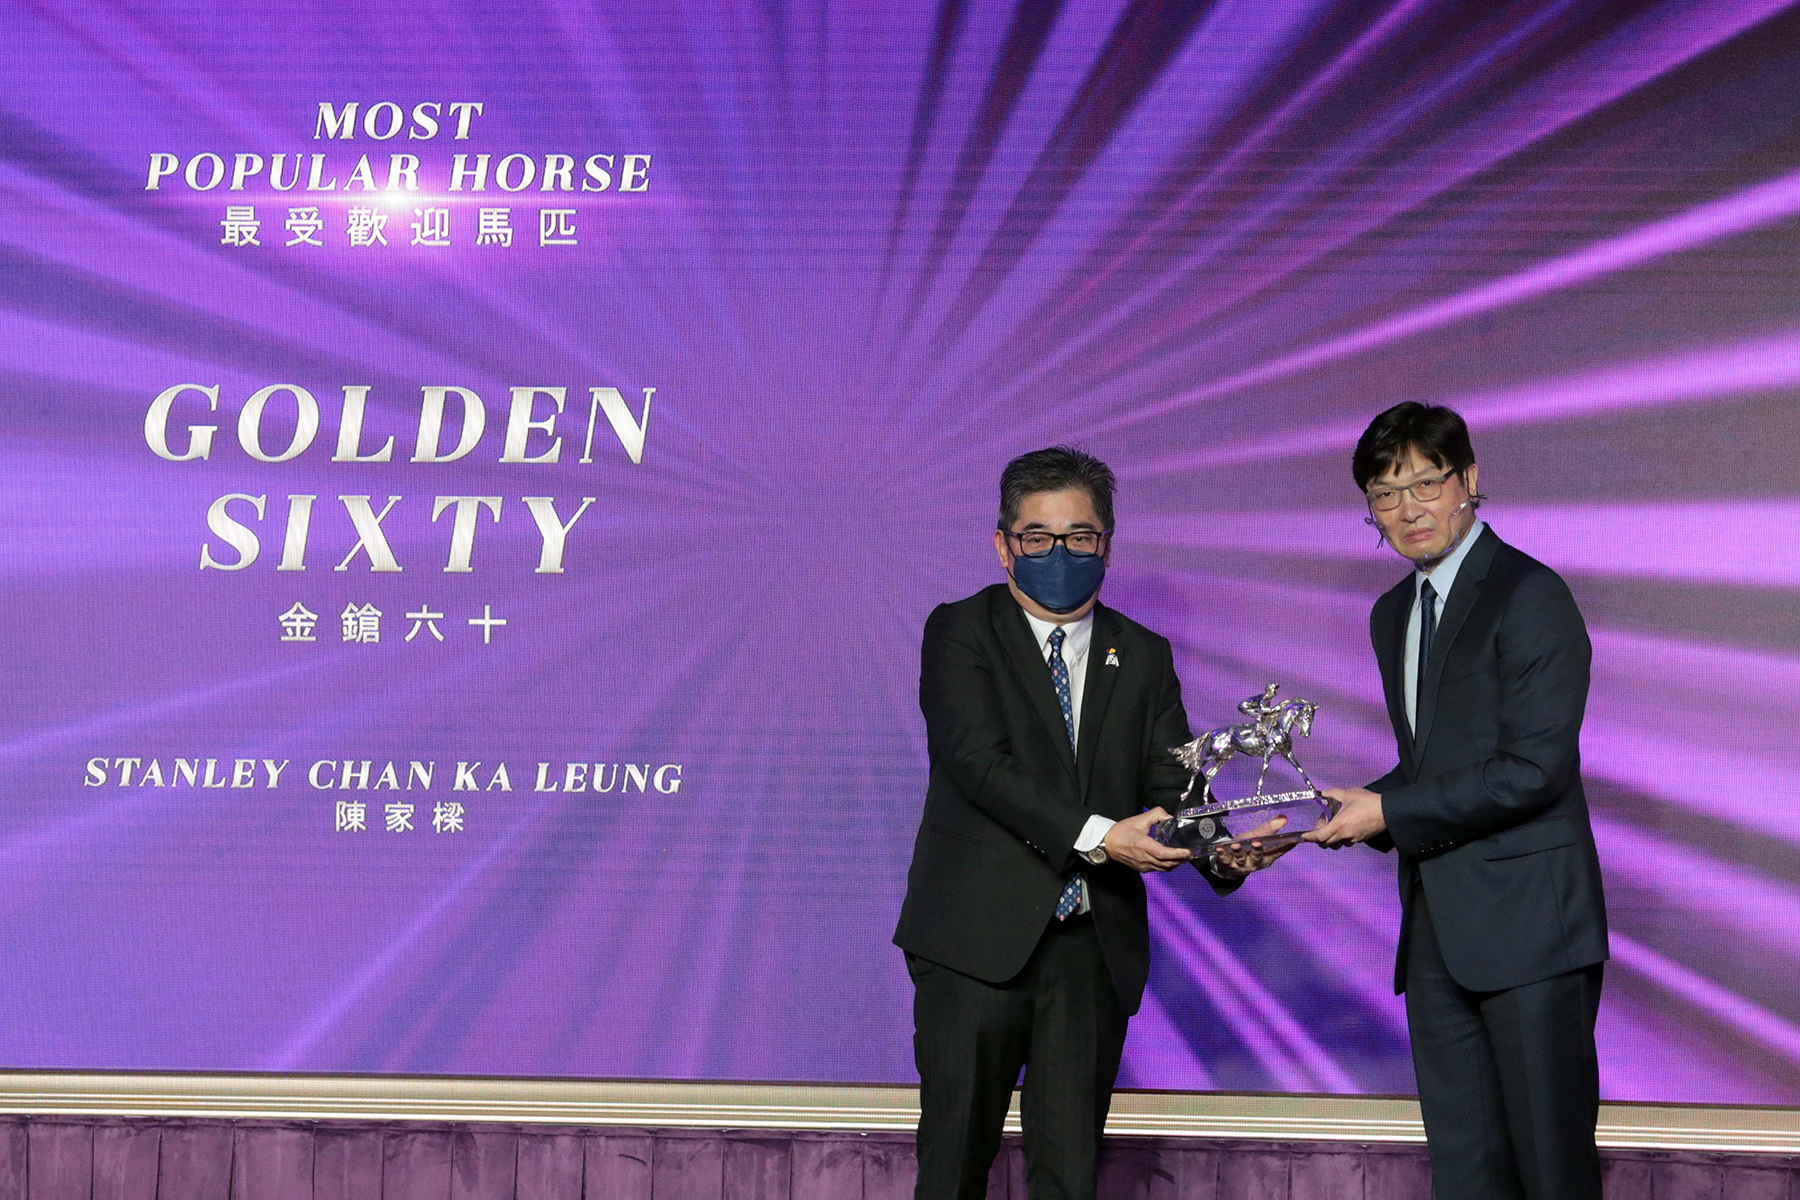 香港賽馬會董事陳衍里醫生頒發最受歡迎馬匹獎座予「金鎗六十」的馬主陳家樑先生。